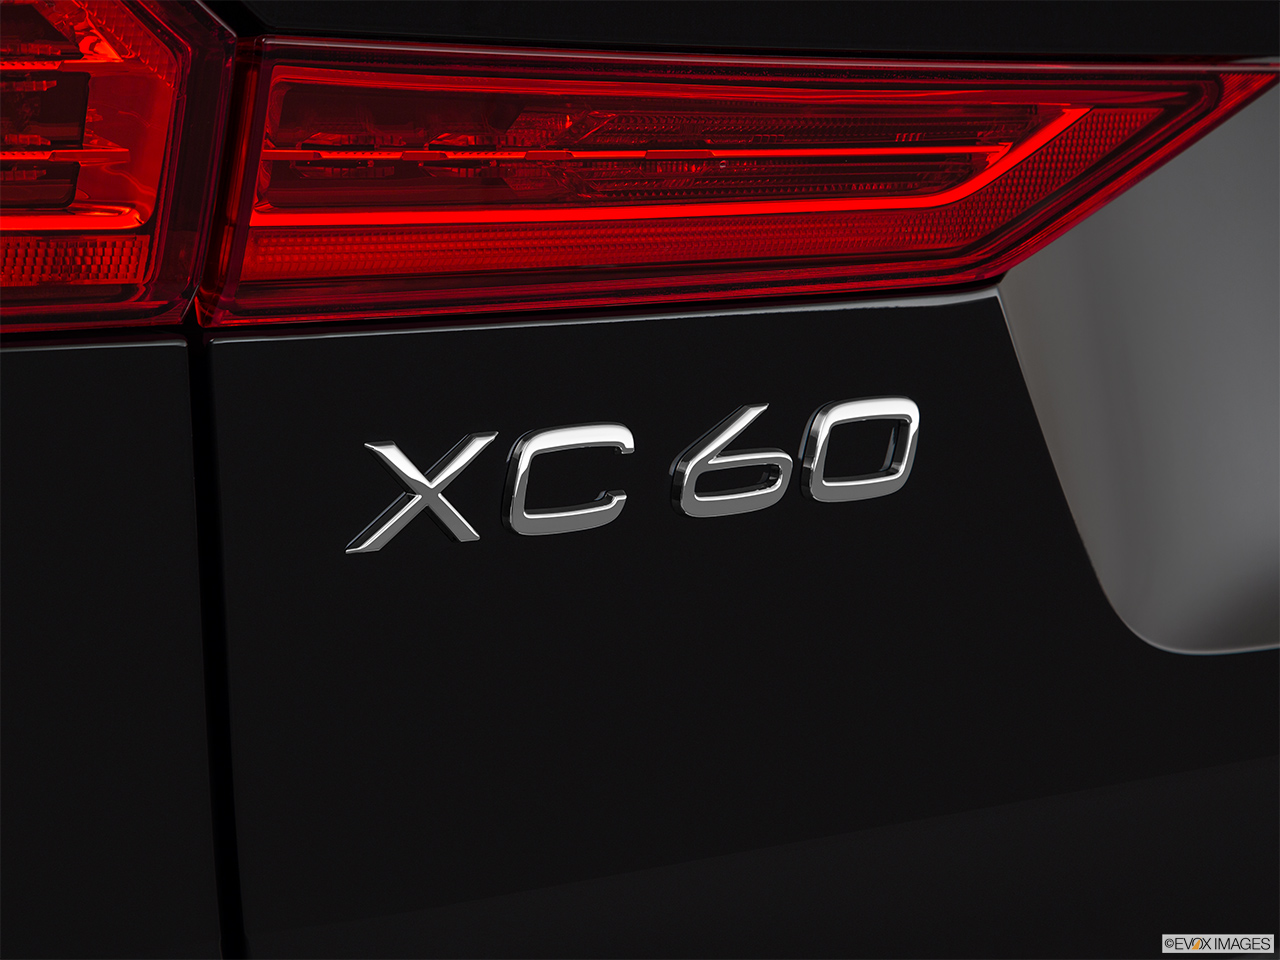 2019 Volvo XC60 T8 R-Design eAWD Plug-in Hybrid Rear model badge/emblem 